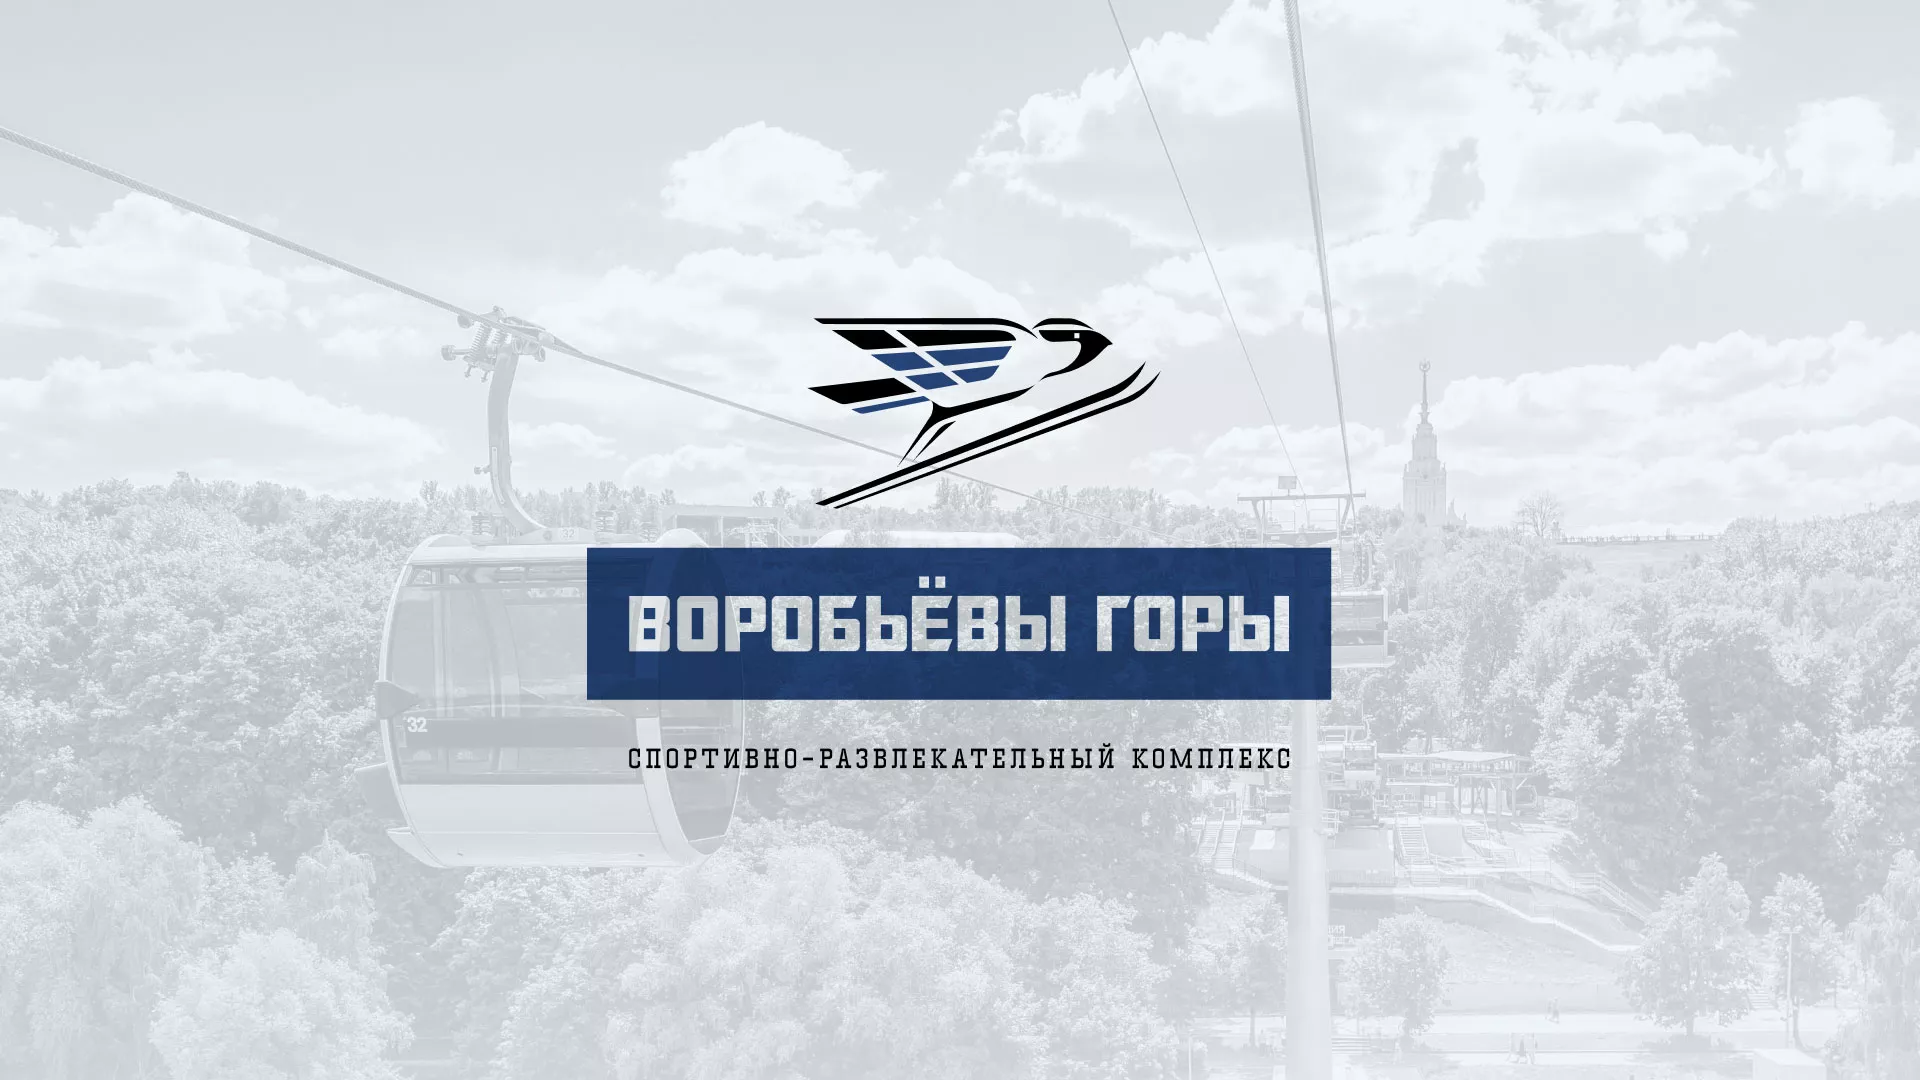 Разработка сайта в Тейково для спортивно-развлекательного комплекса «Воробьёвы горы»